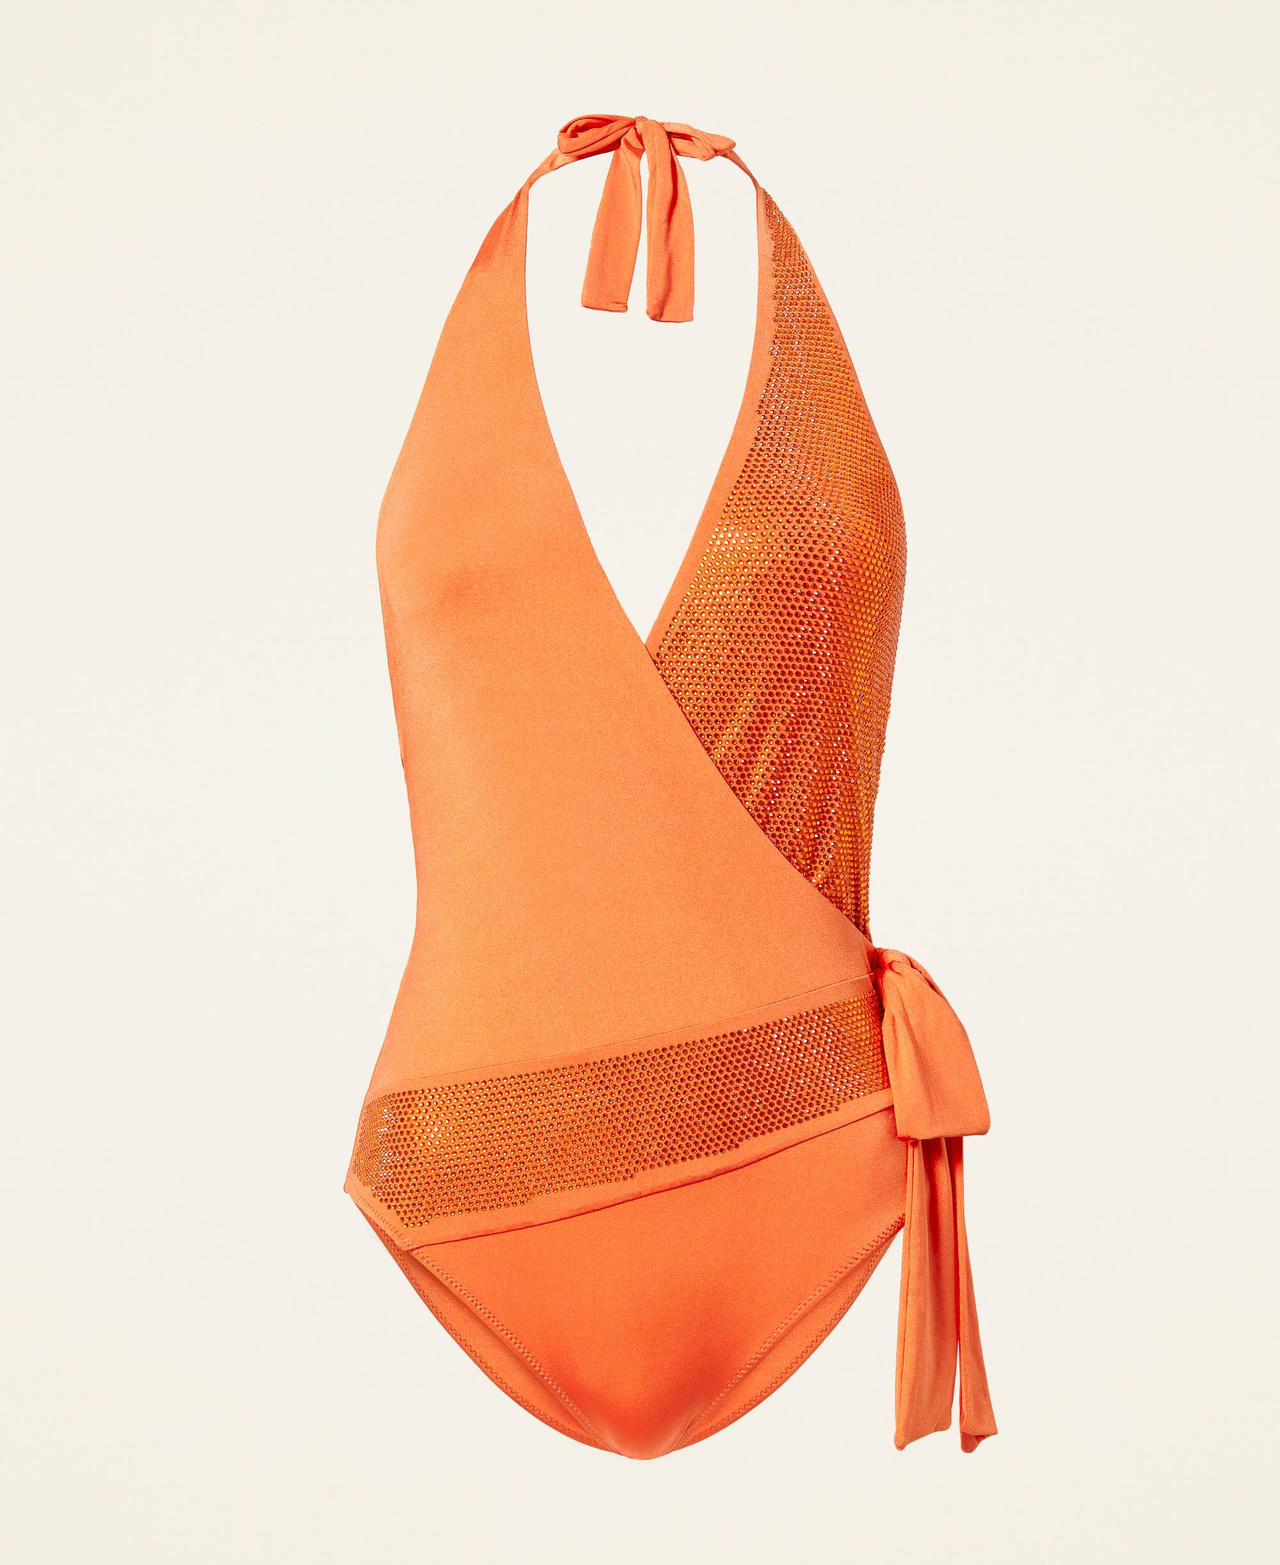 Maillot de bain une pièce avec strass et ruban Orange « Orange Sun » Femme 221LBMBVV-0S